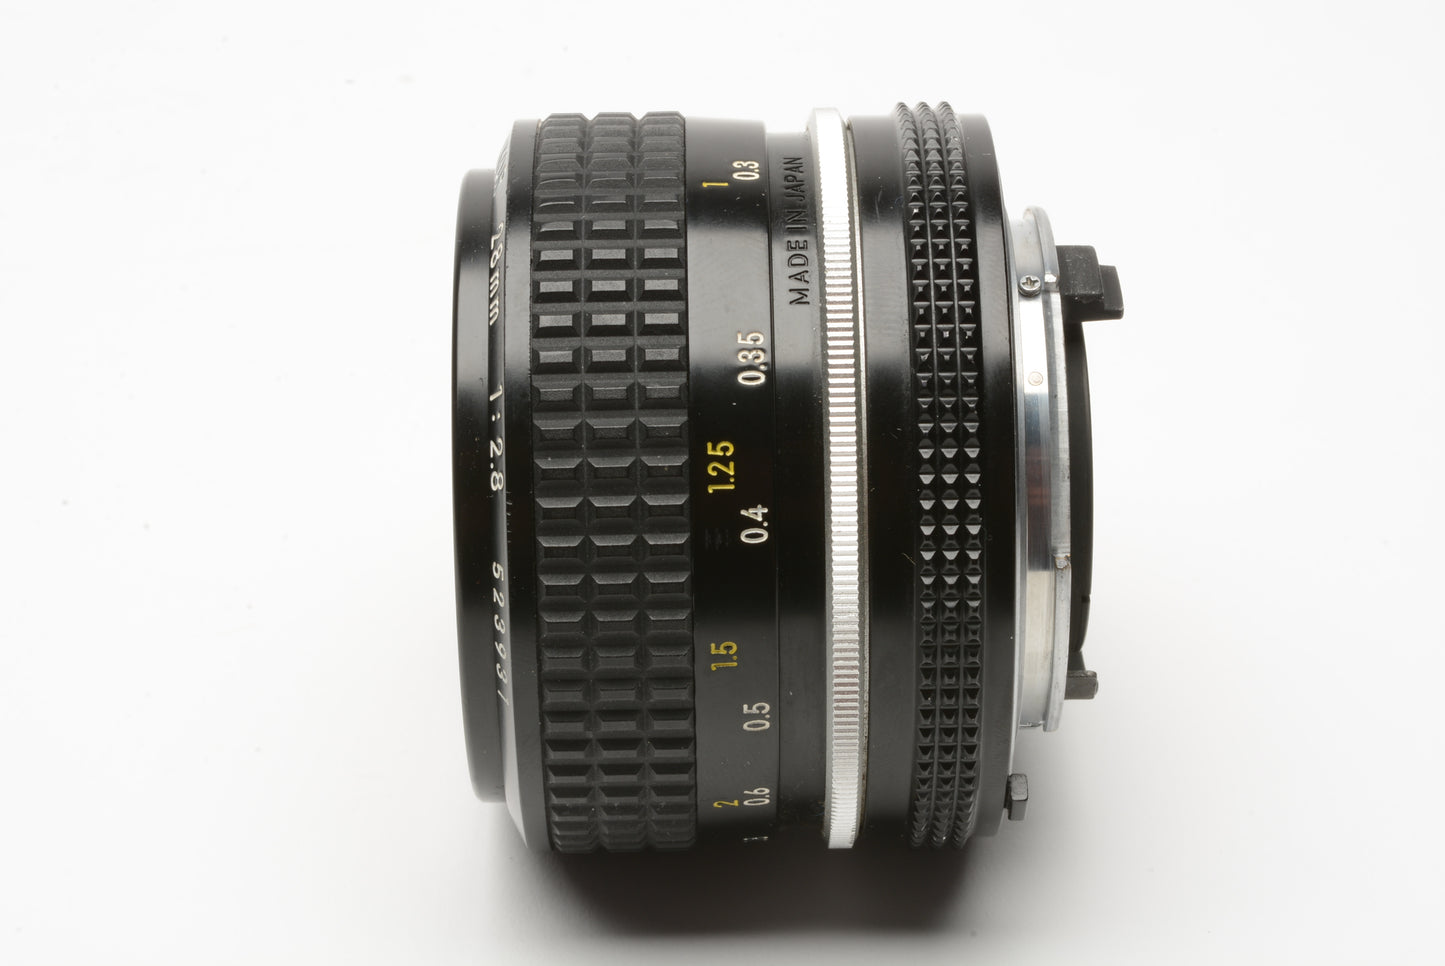 Nikon Nikkor 28mm f2.8 wide angle lens, clean & sharp